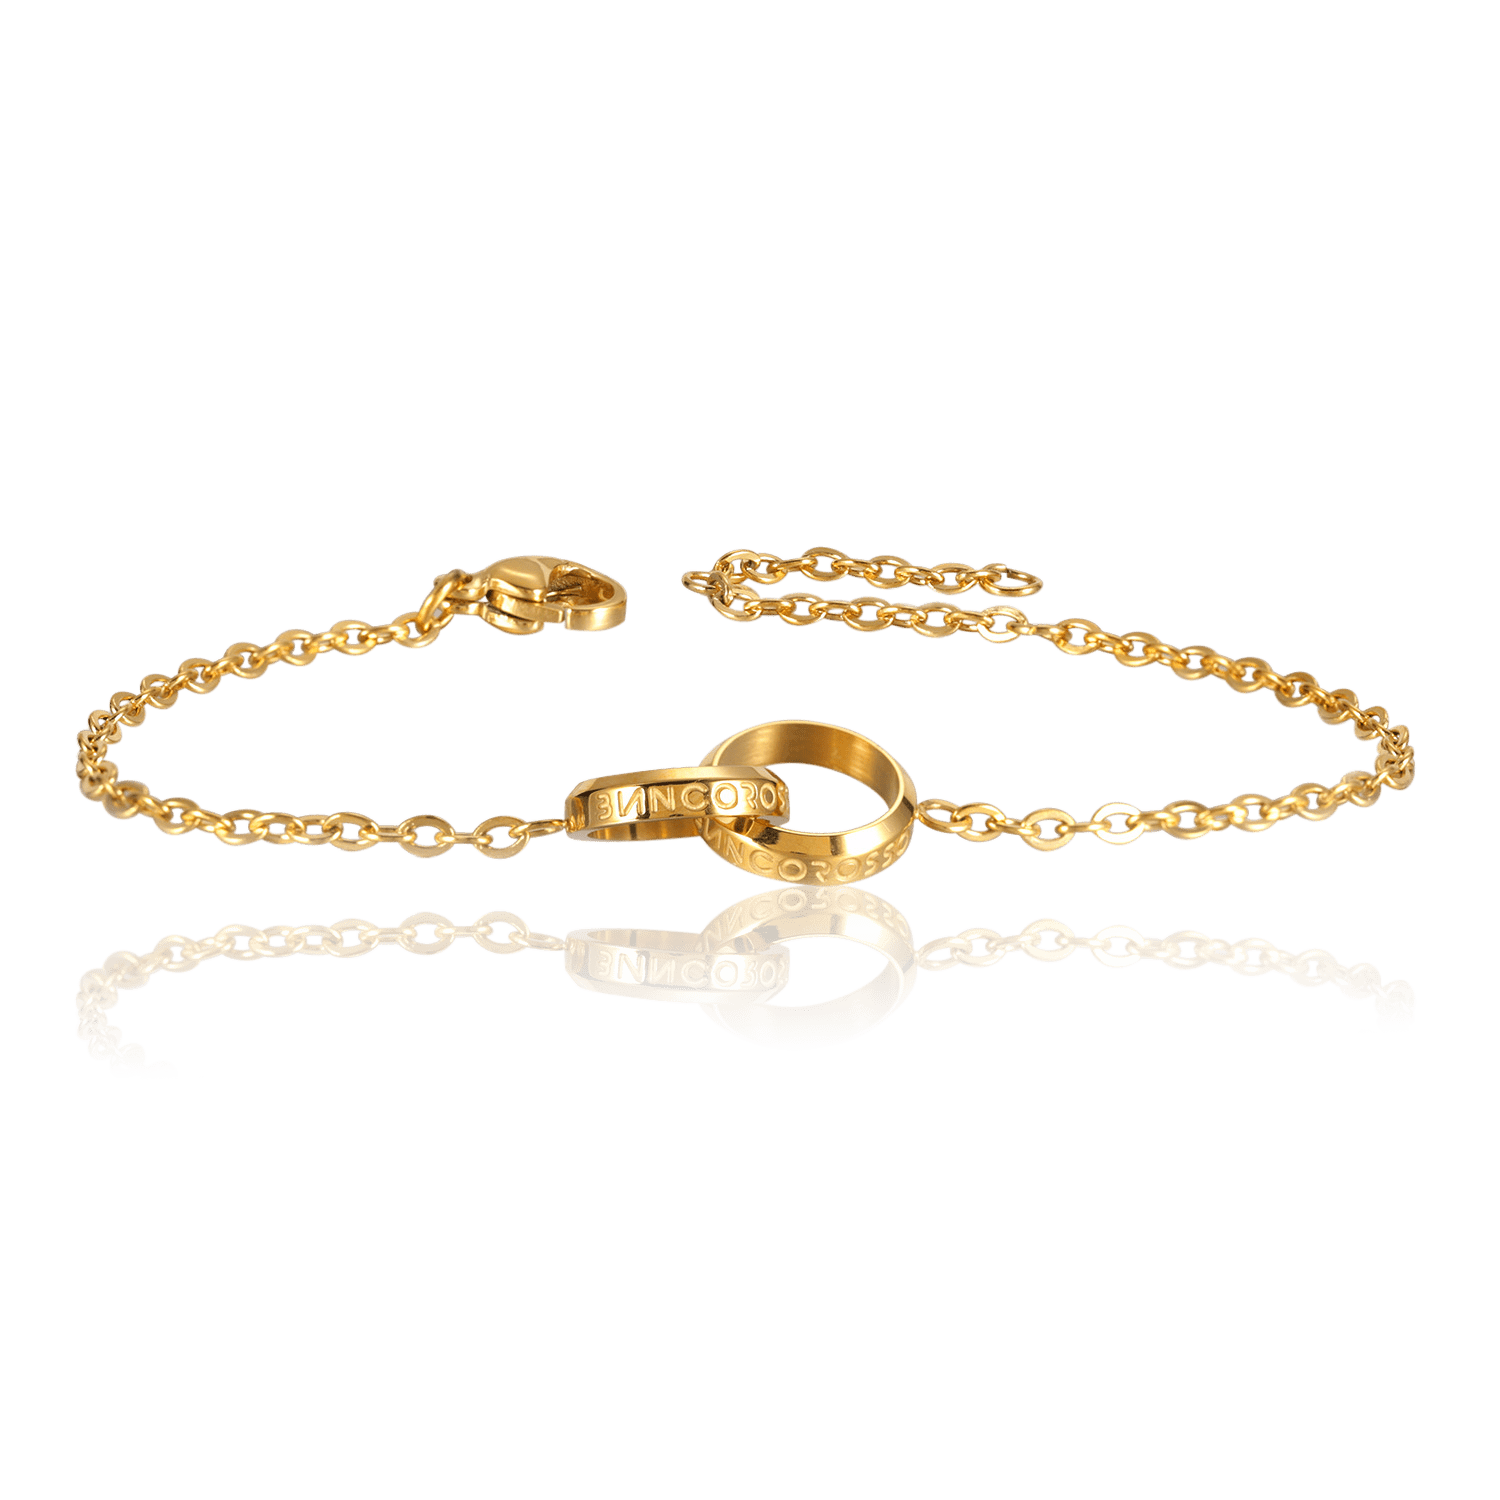 bianco rosso Bracelets To My Godmother - Eternity Bracelet cyprus greece jewelry gift free shipping europe worldwide